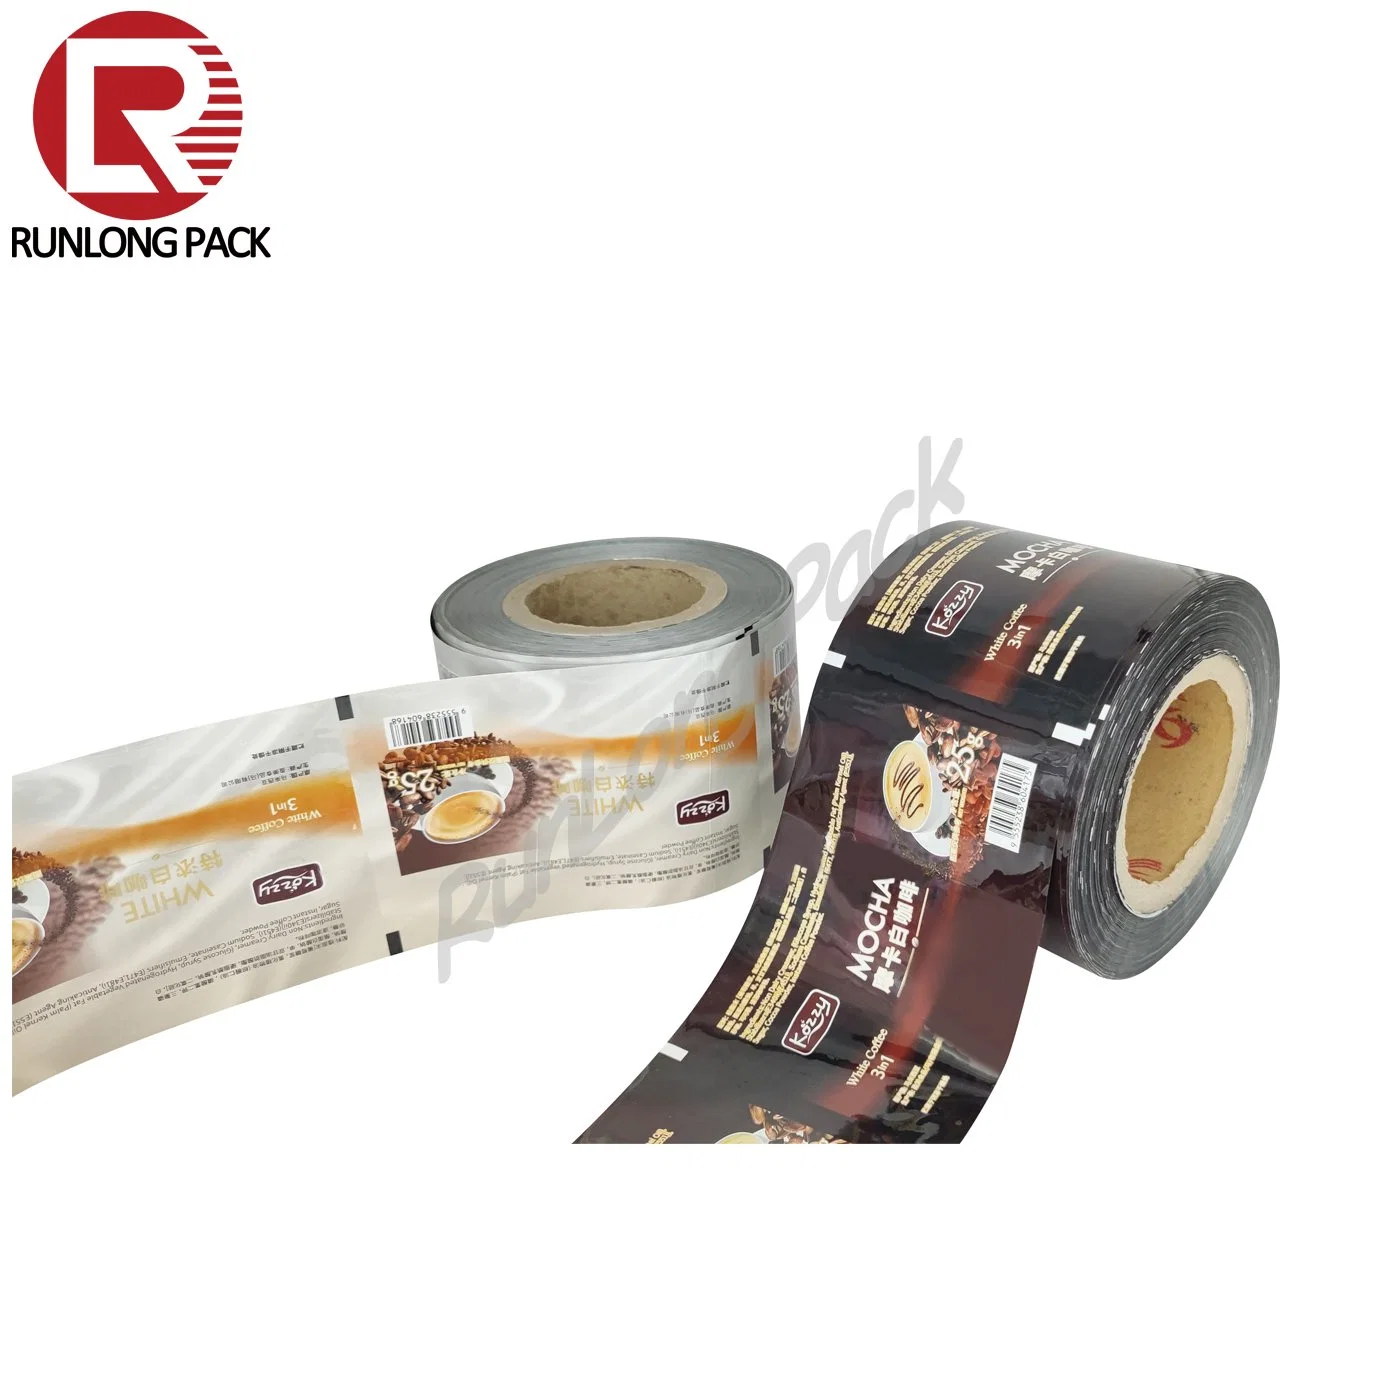 D'Aluminium de série de café à l'emballage plastique Sachet de film en rouleau pour le café en poudre sac d'emballage en rouleaux